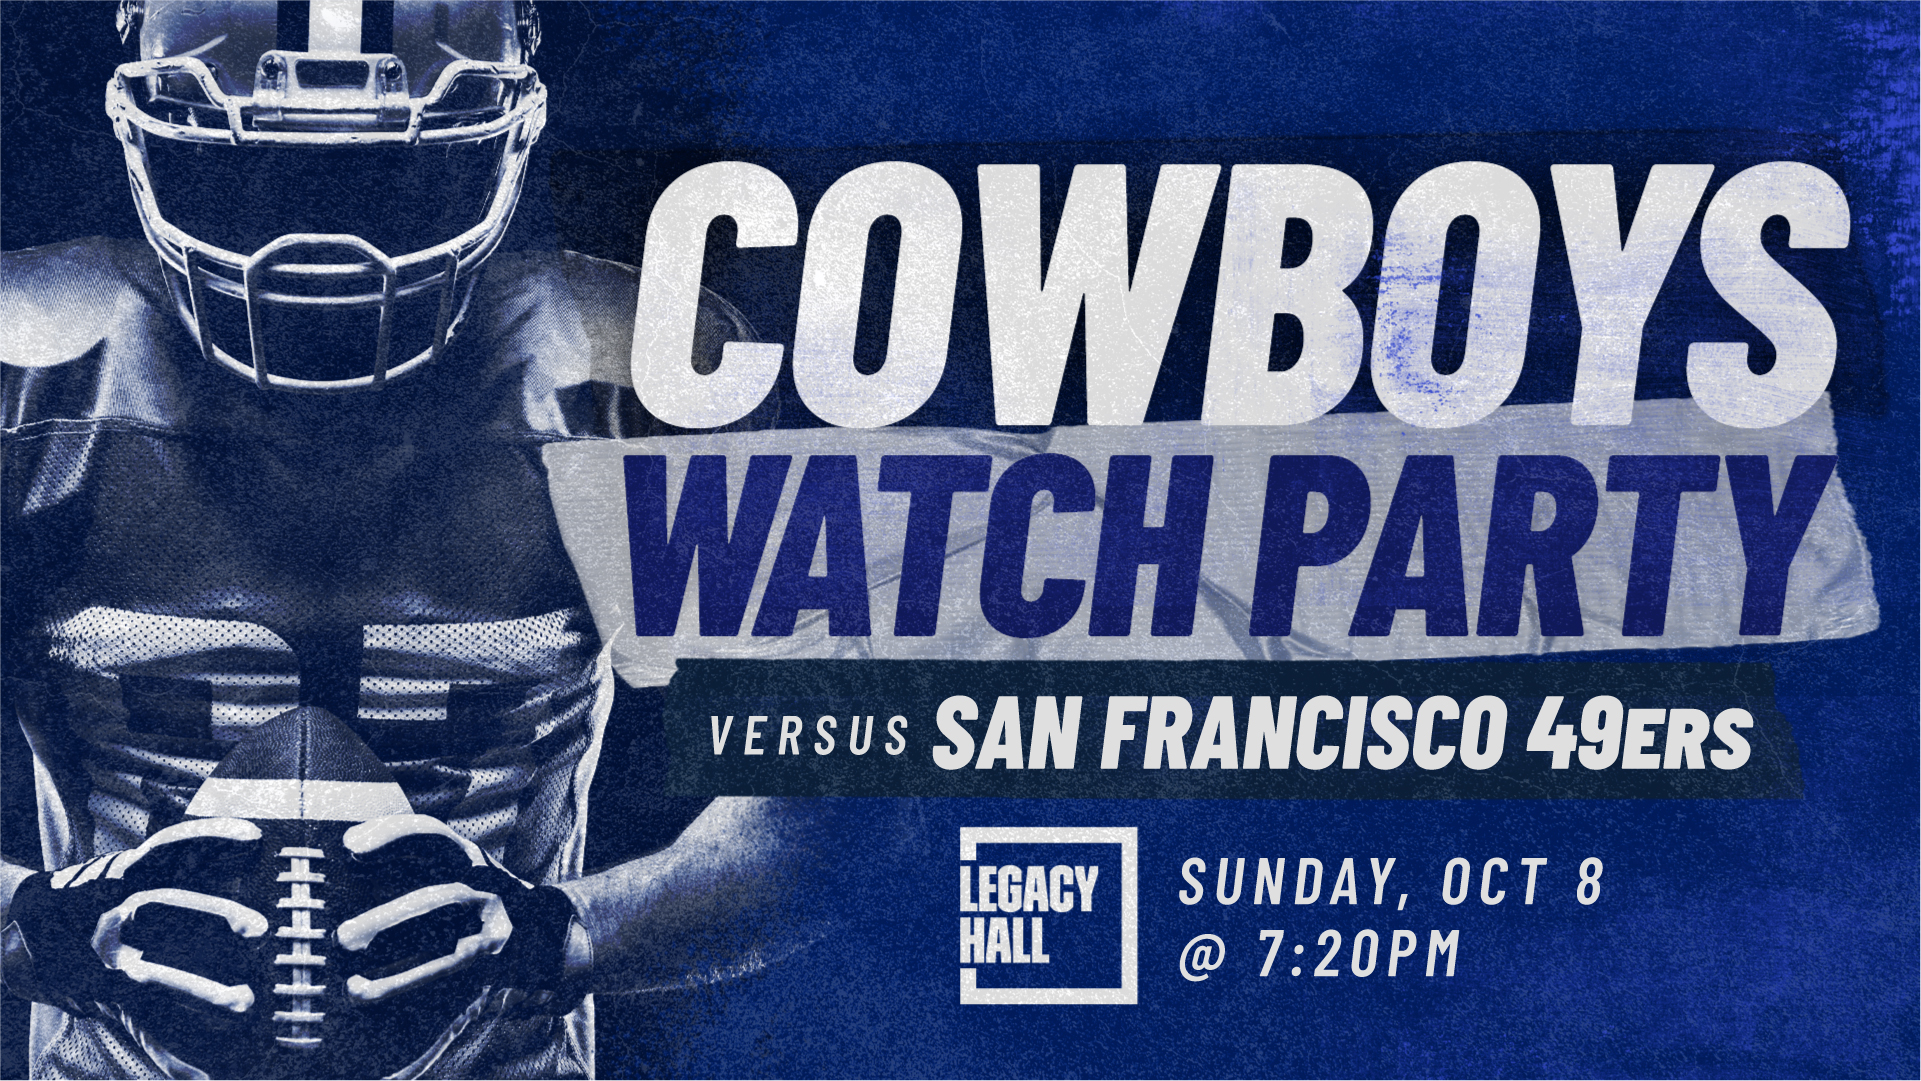 Dallas Cowboys vs San Francisco 49ers Watch Party